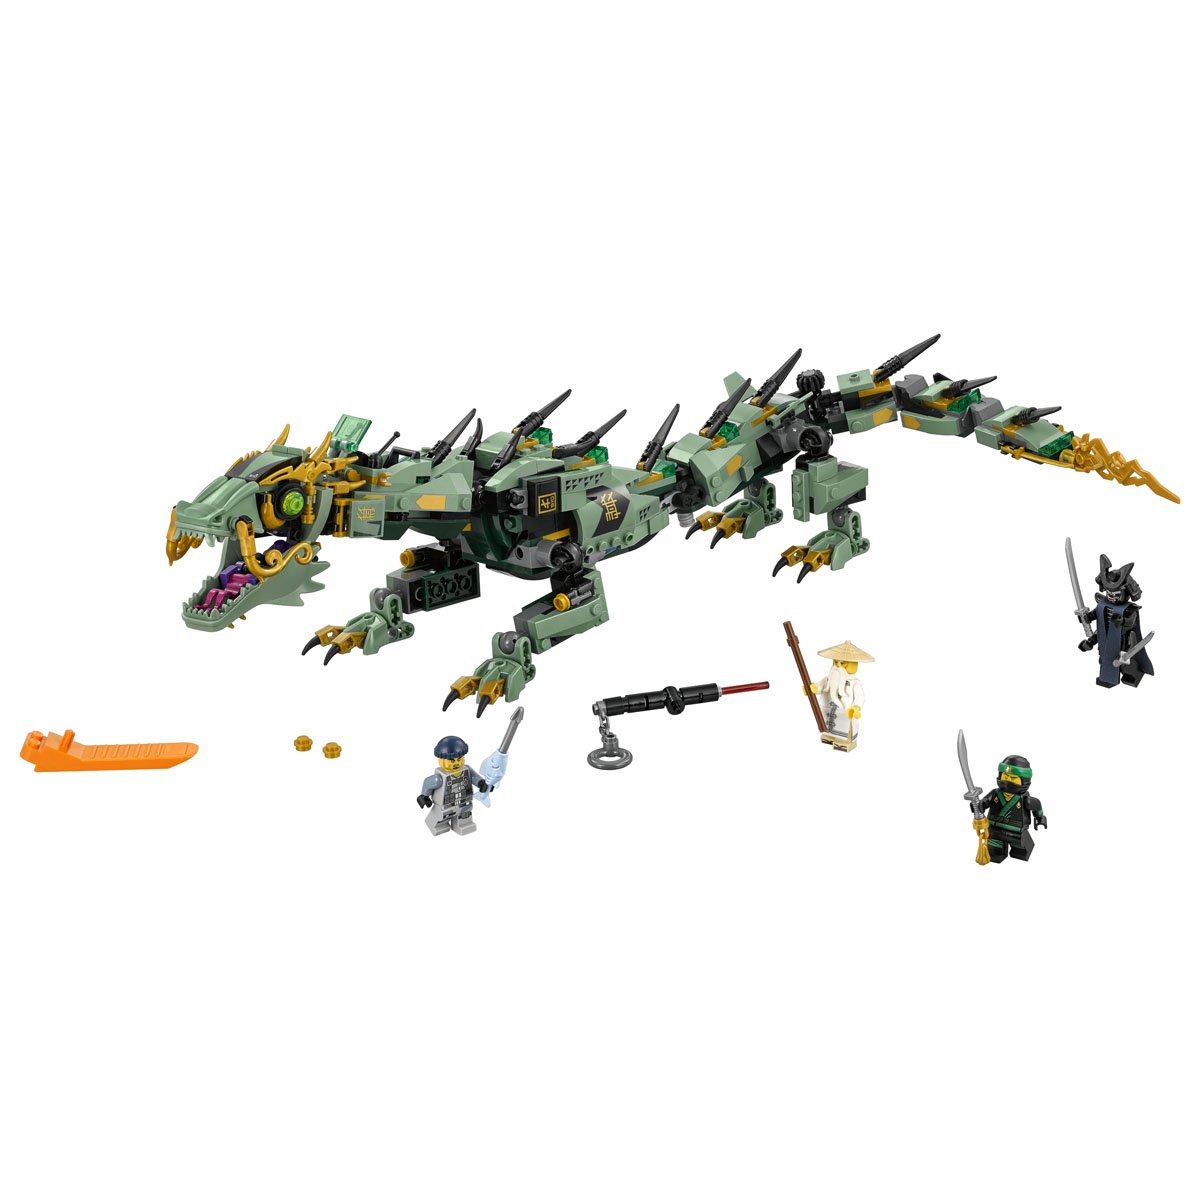 Ninjago -  Dragón Mecánico Del Ninja Verde Lego